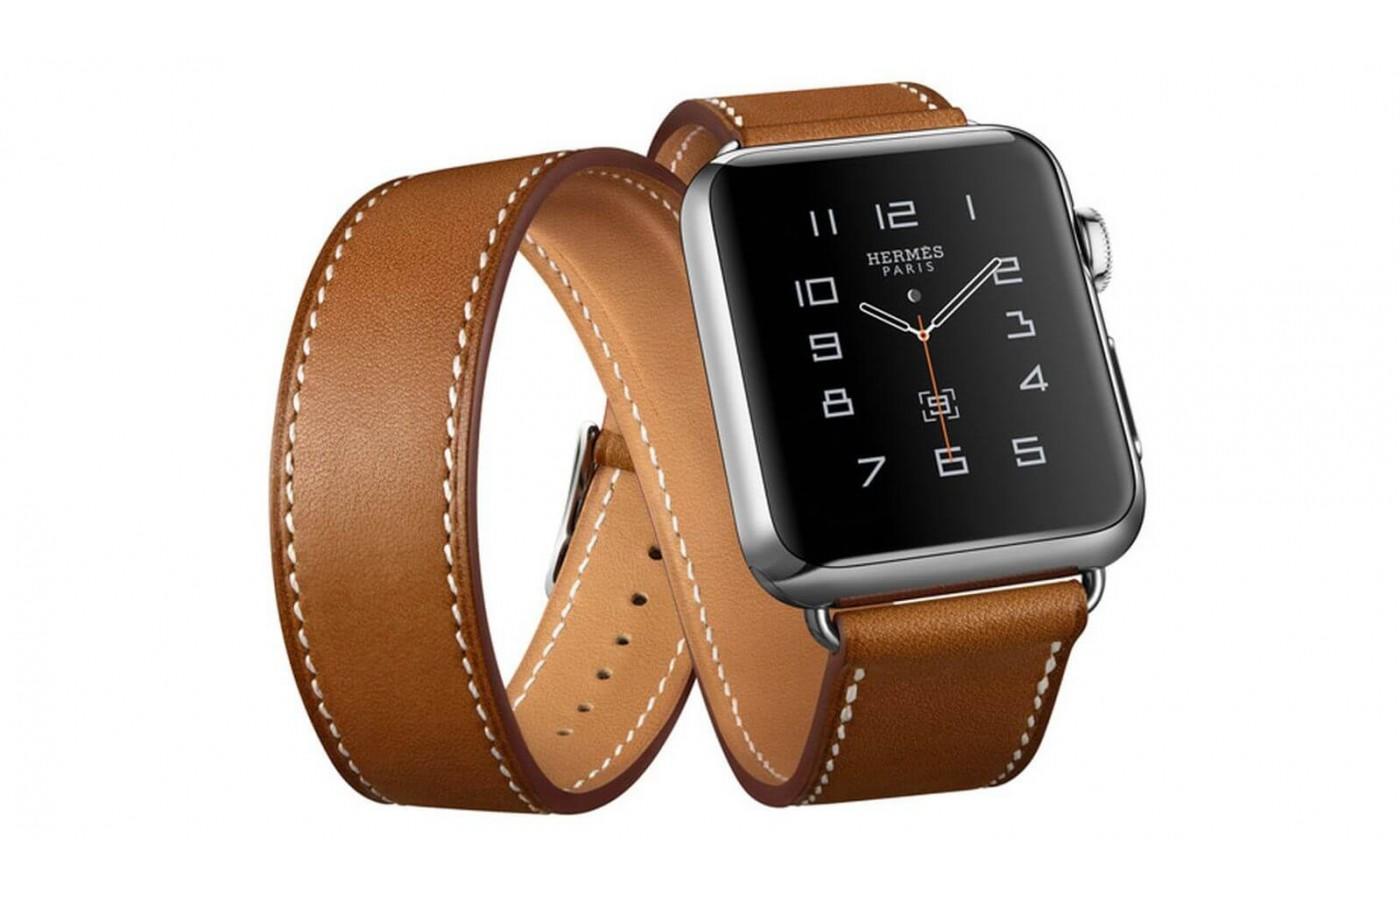 Apple Watch Hermes has a distinct look